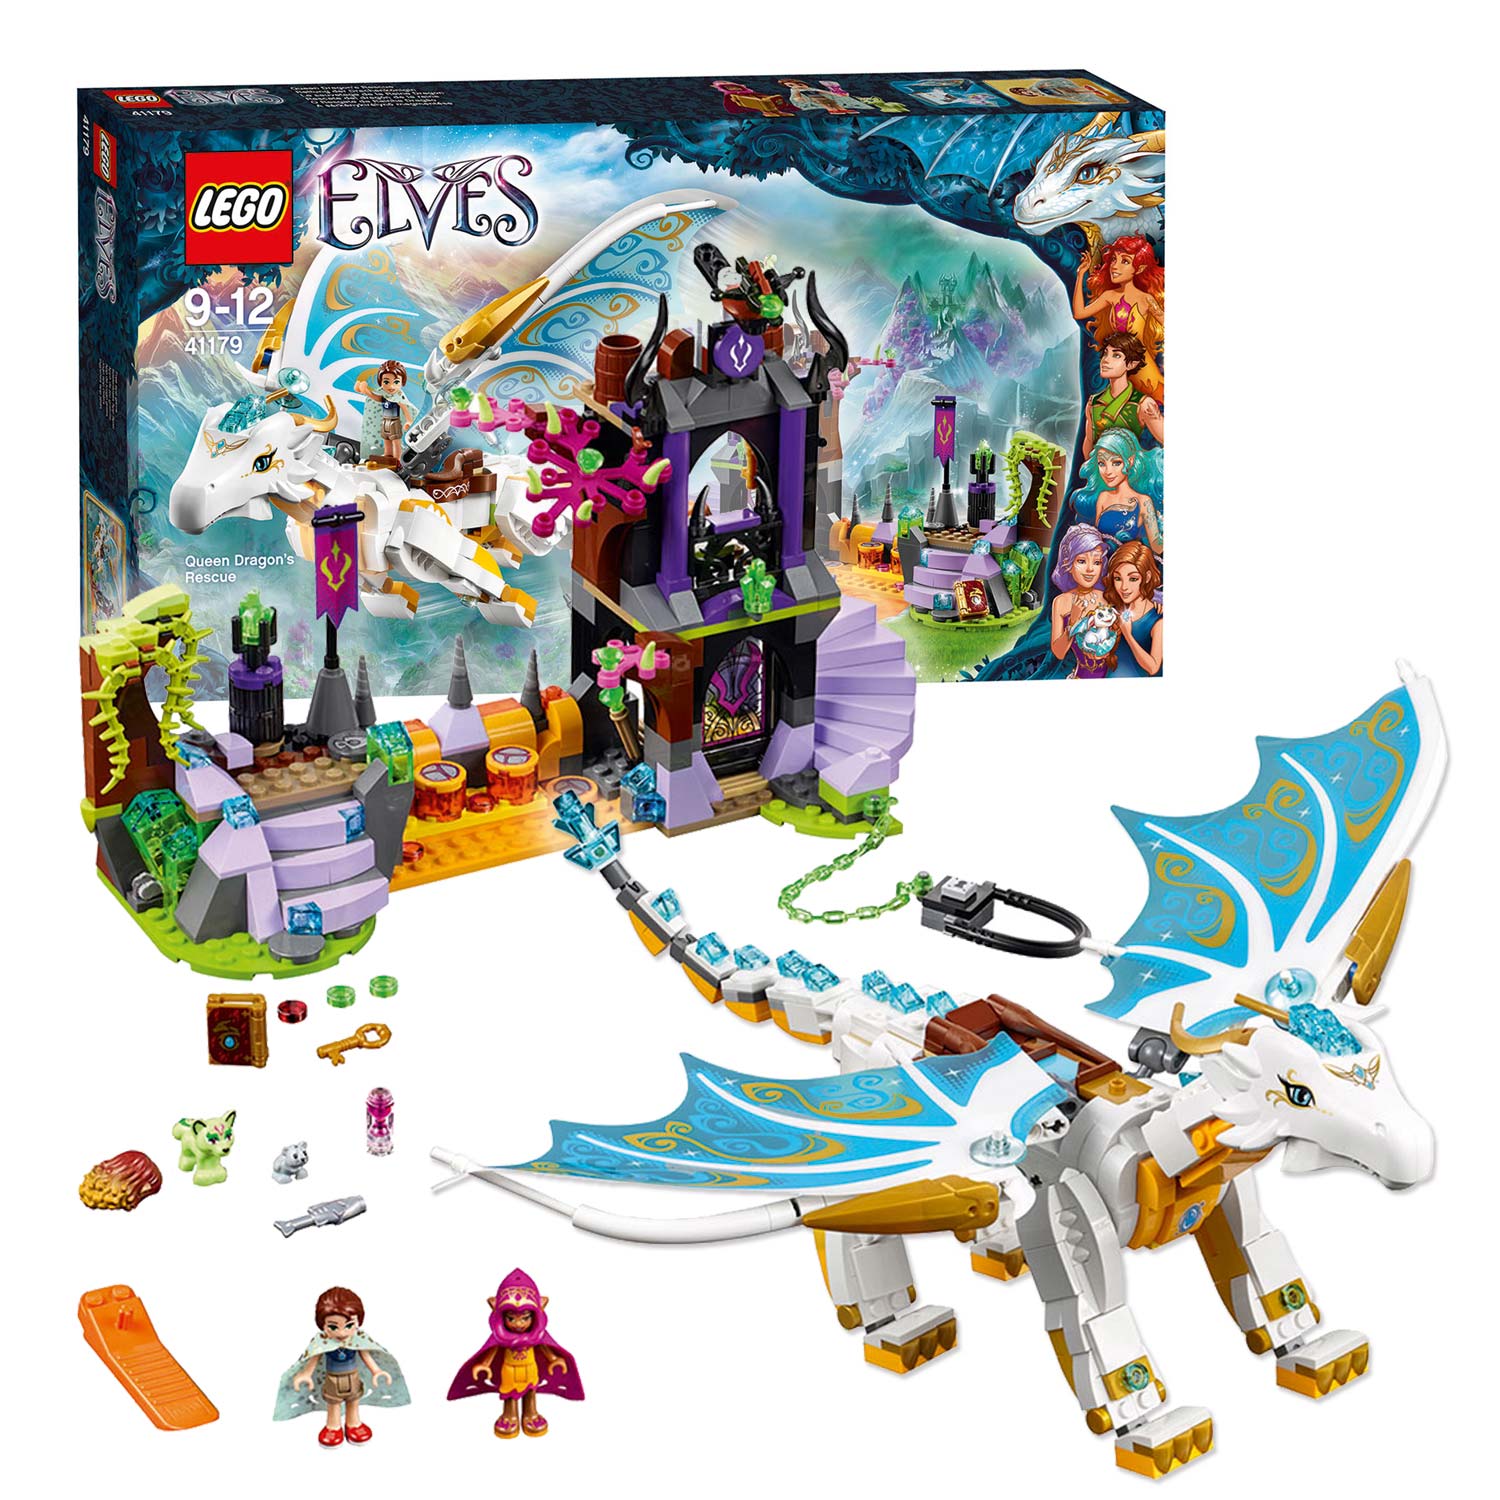 LEGO Elves 41179 Koninginnendraak Redding